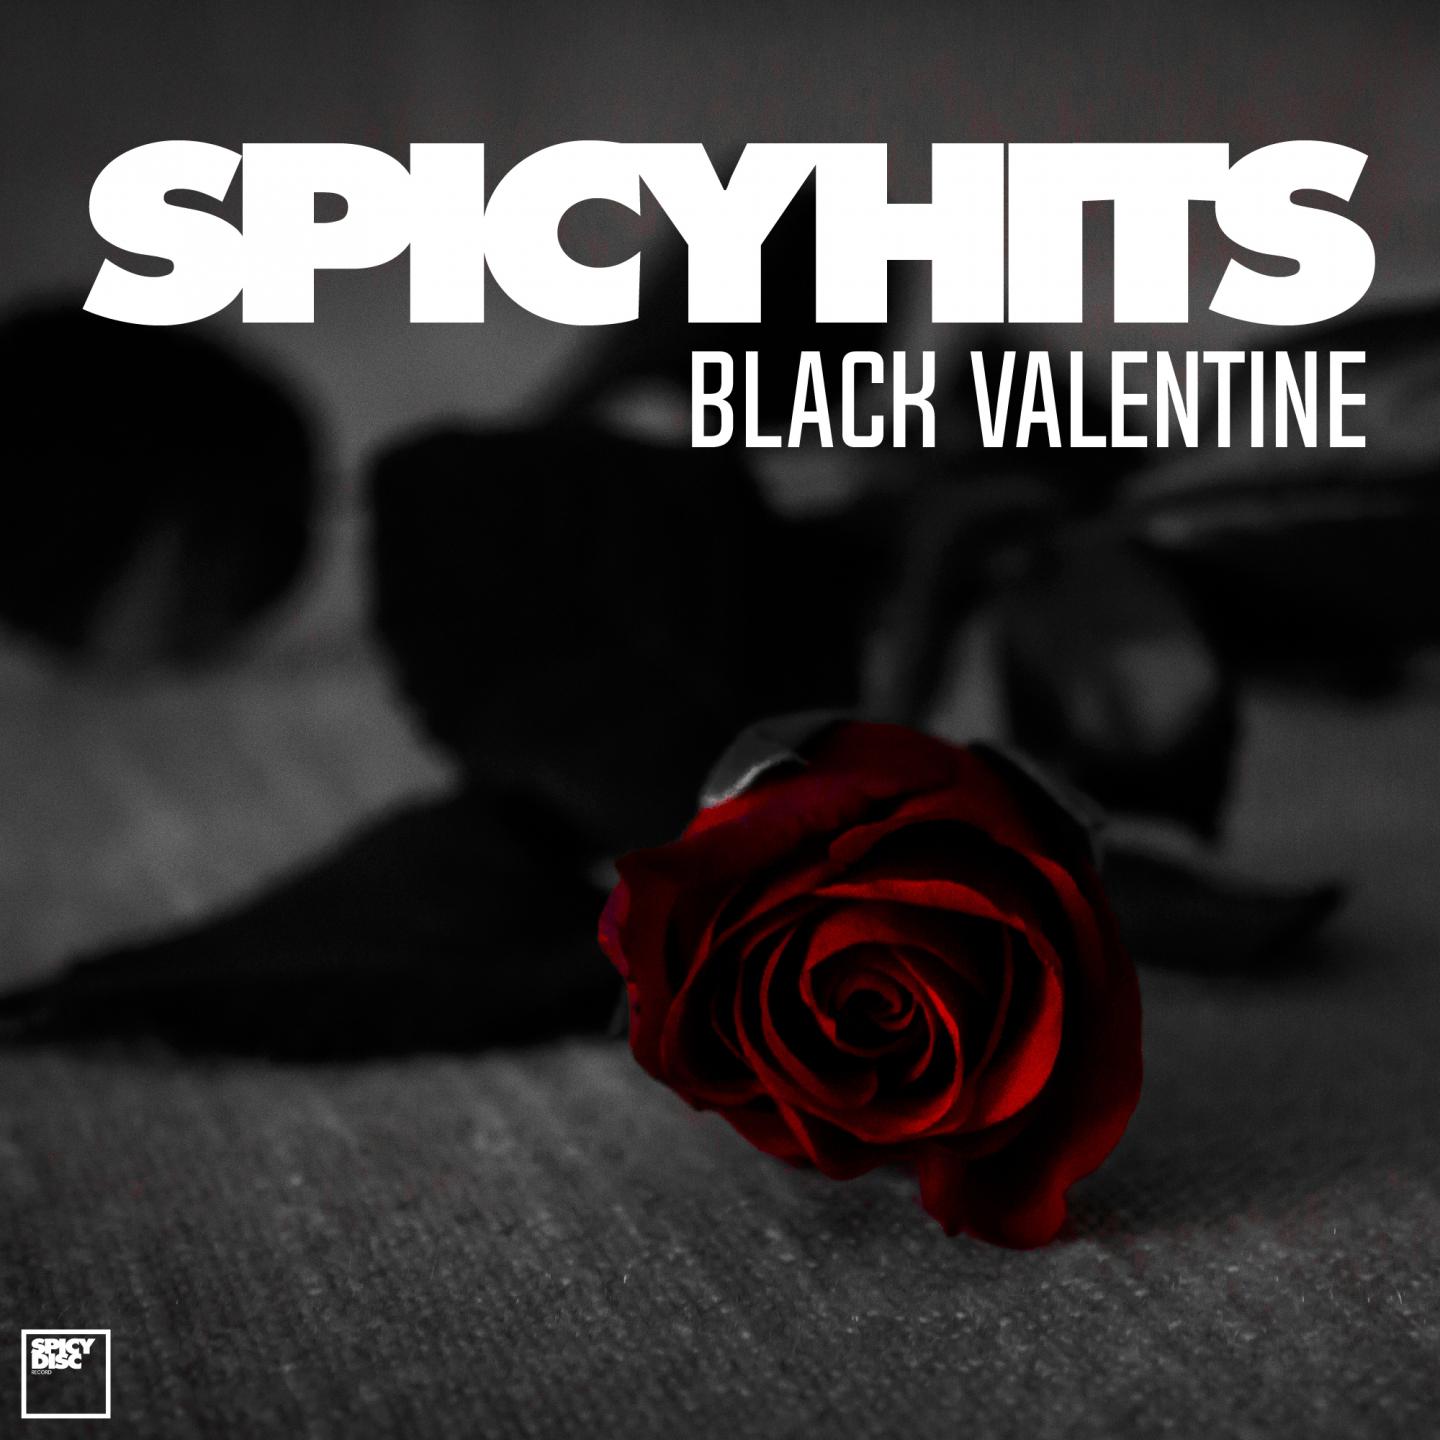 SPICYHITS : BLACK VALENTINE